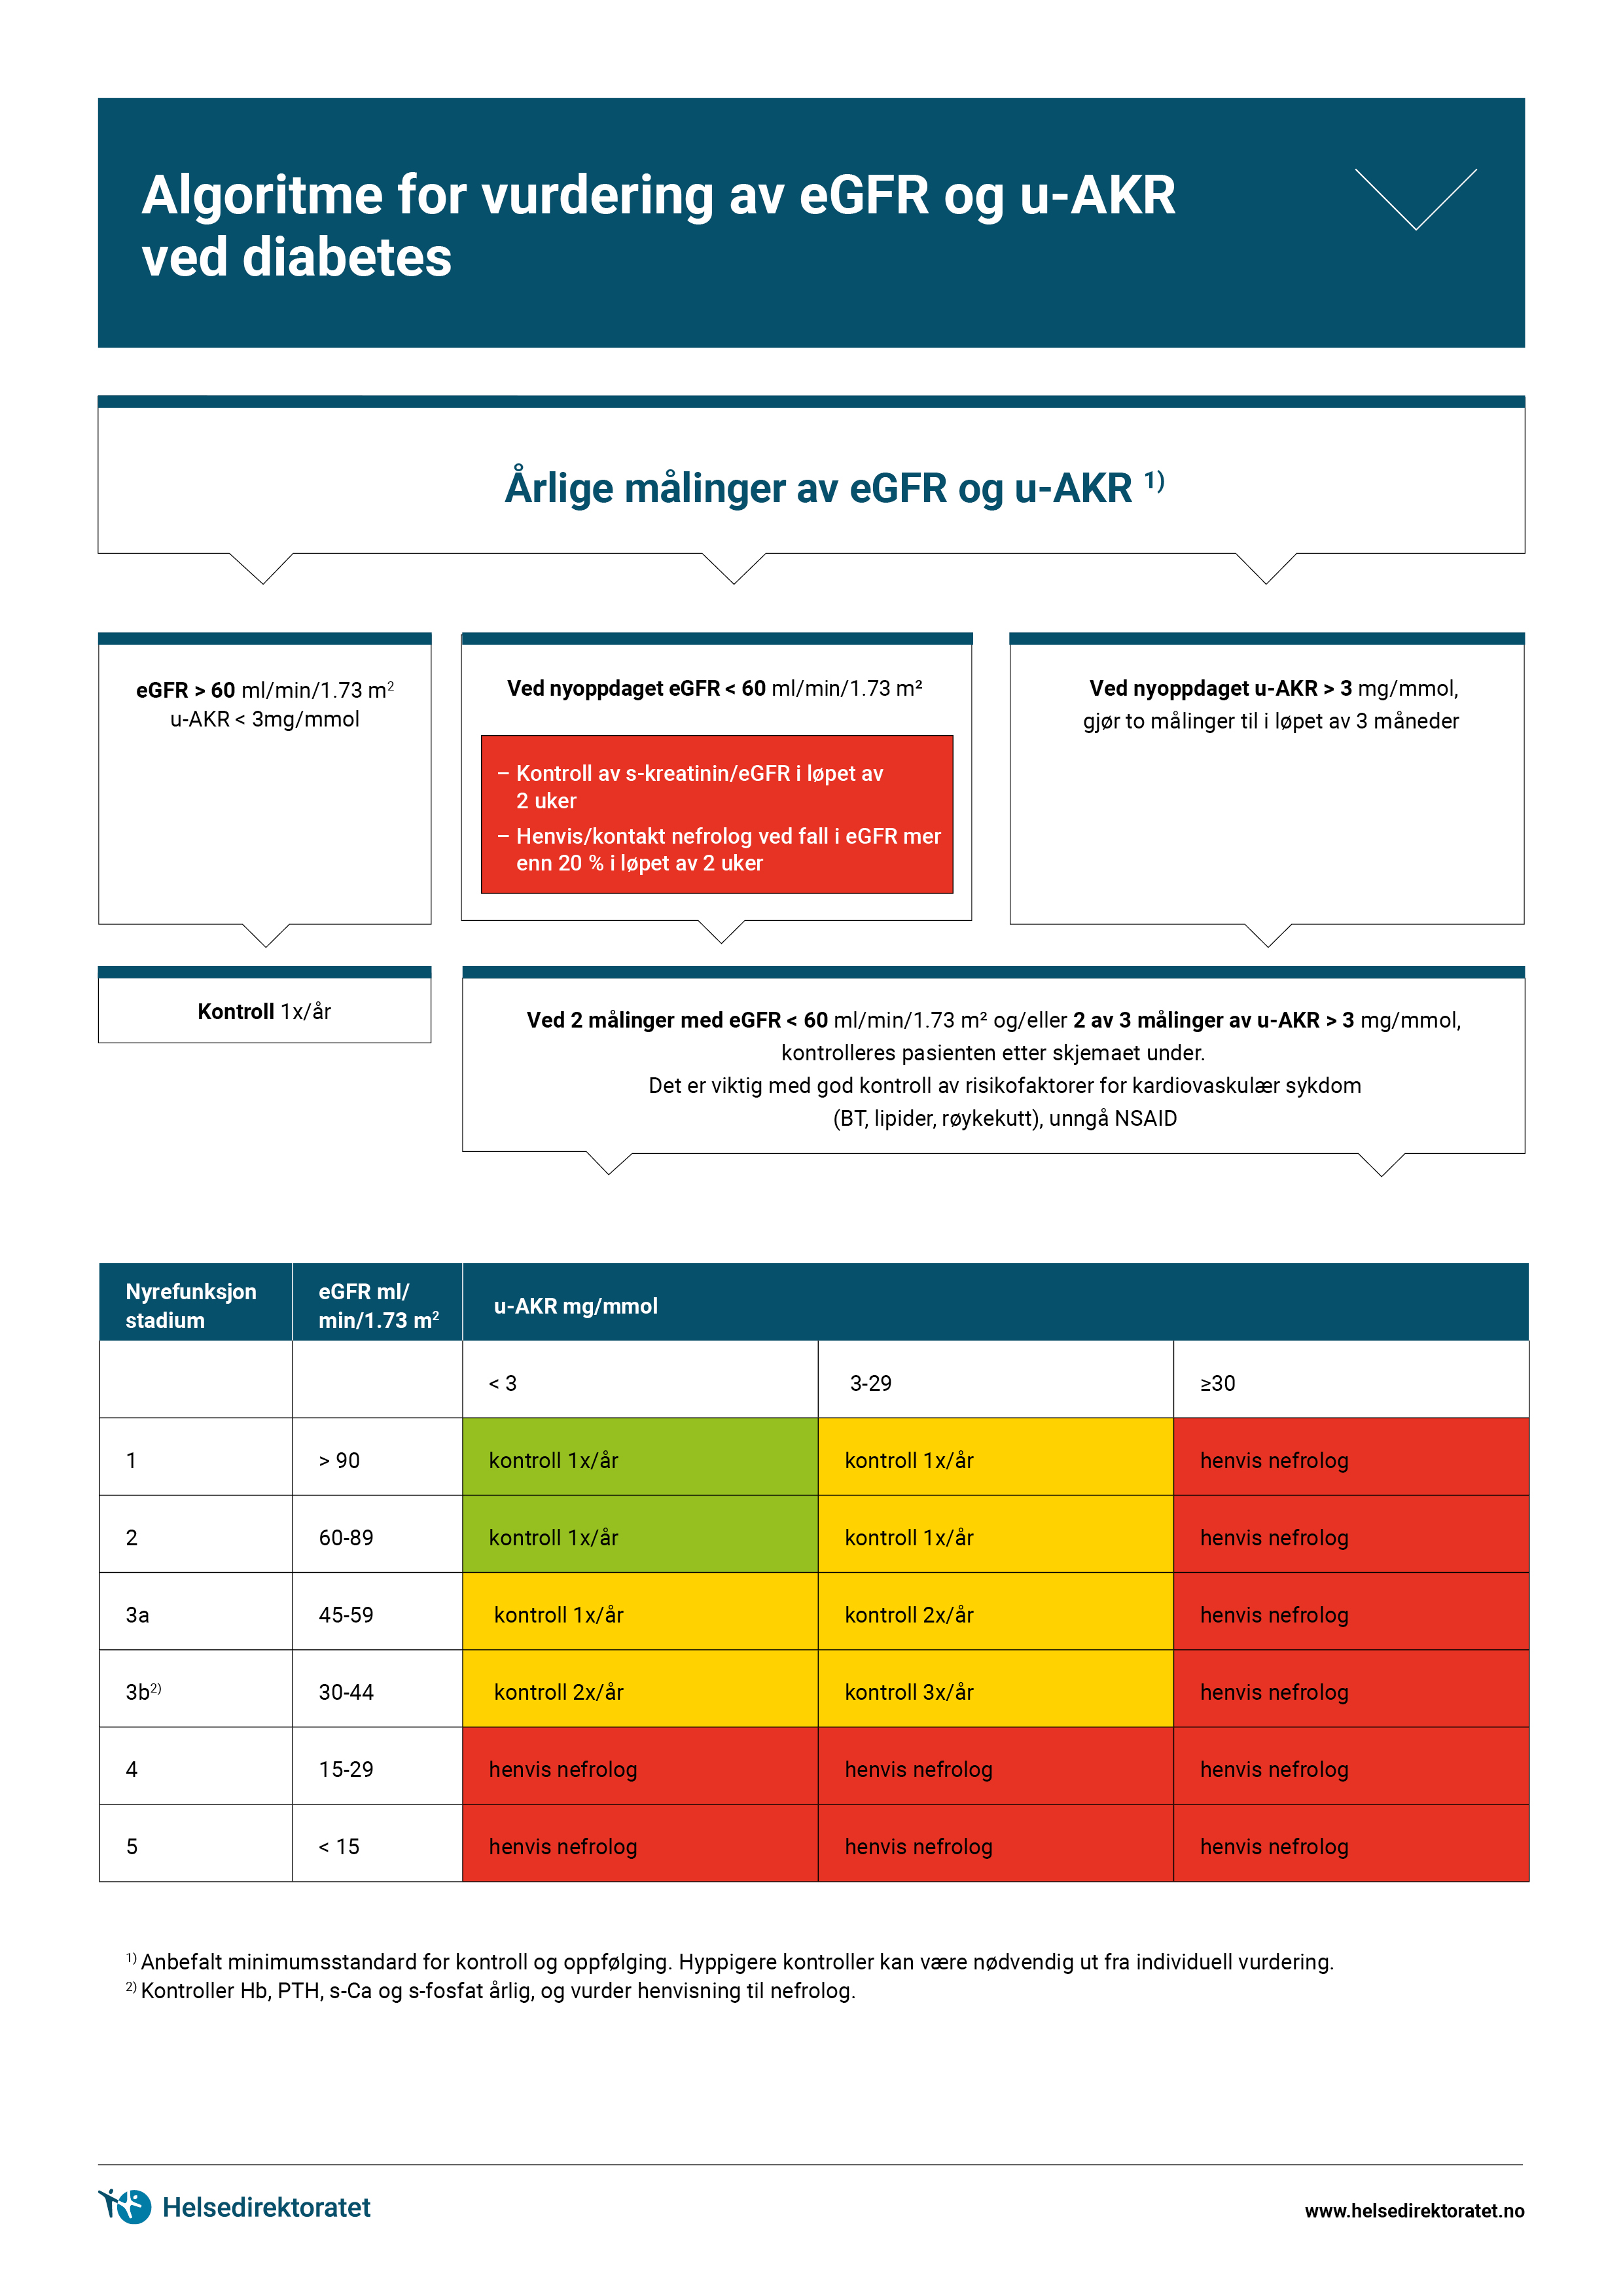 algoritme-for-vurdering-av-eGRR-og-u-AKR-ved-diabetes-mellitus.jpg